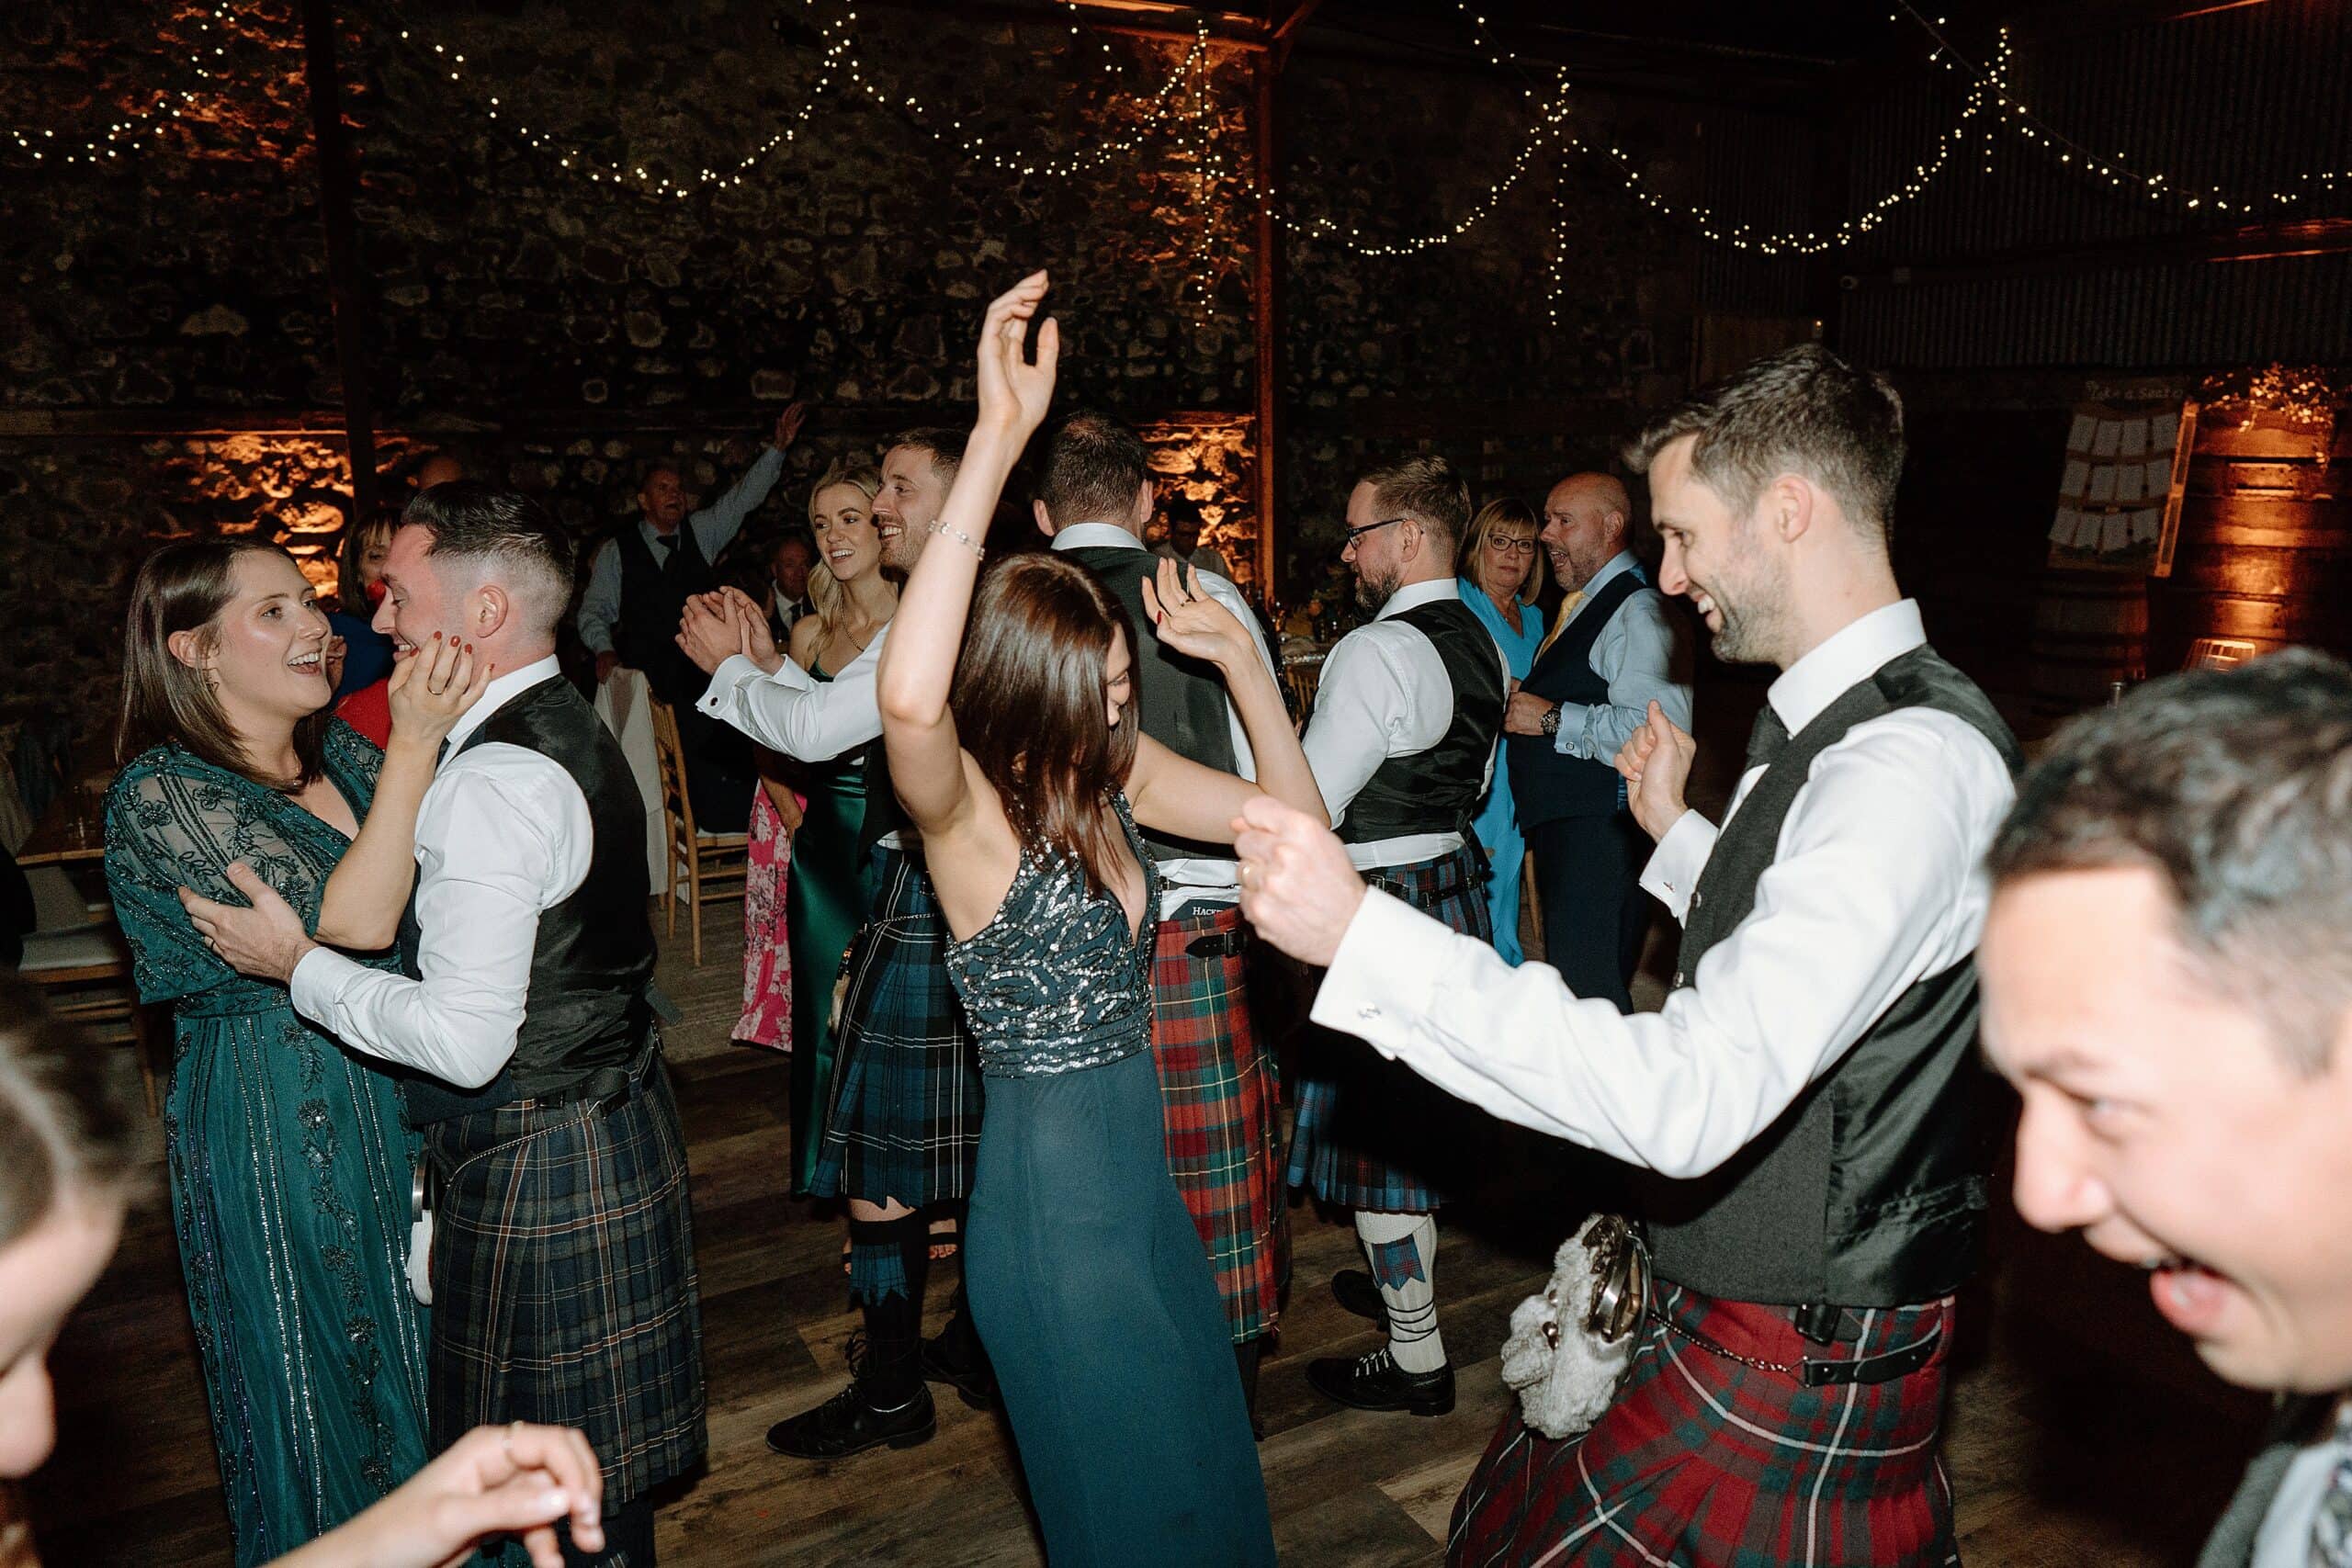 the wedding party dancing beneath festoon lights in the wedding barn at harelaw farm wedding venue fenwick scotland